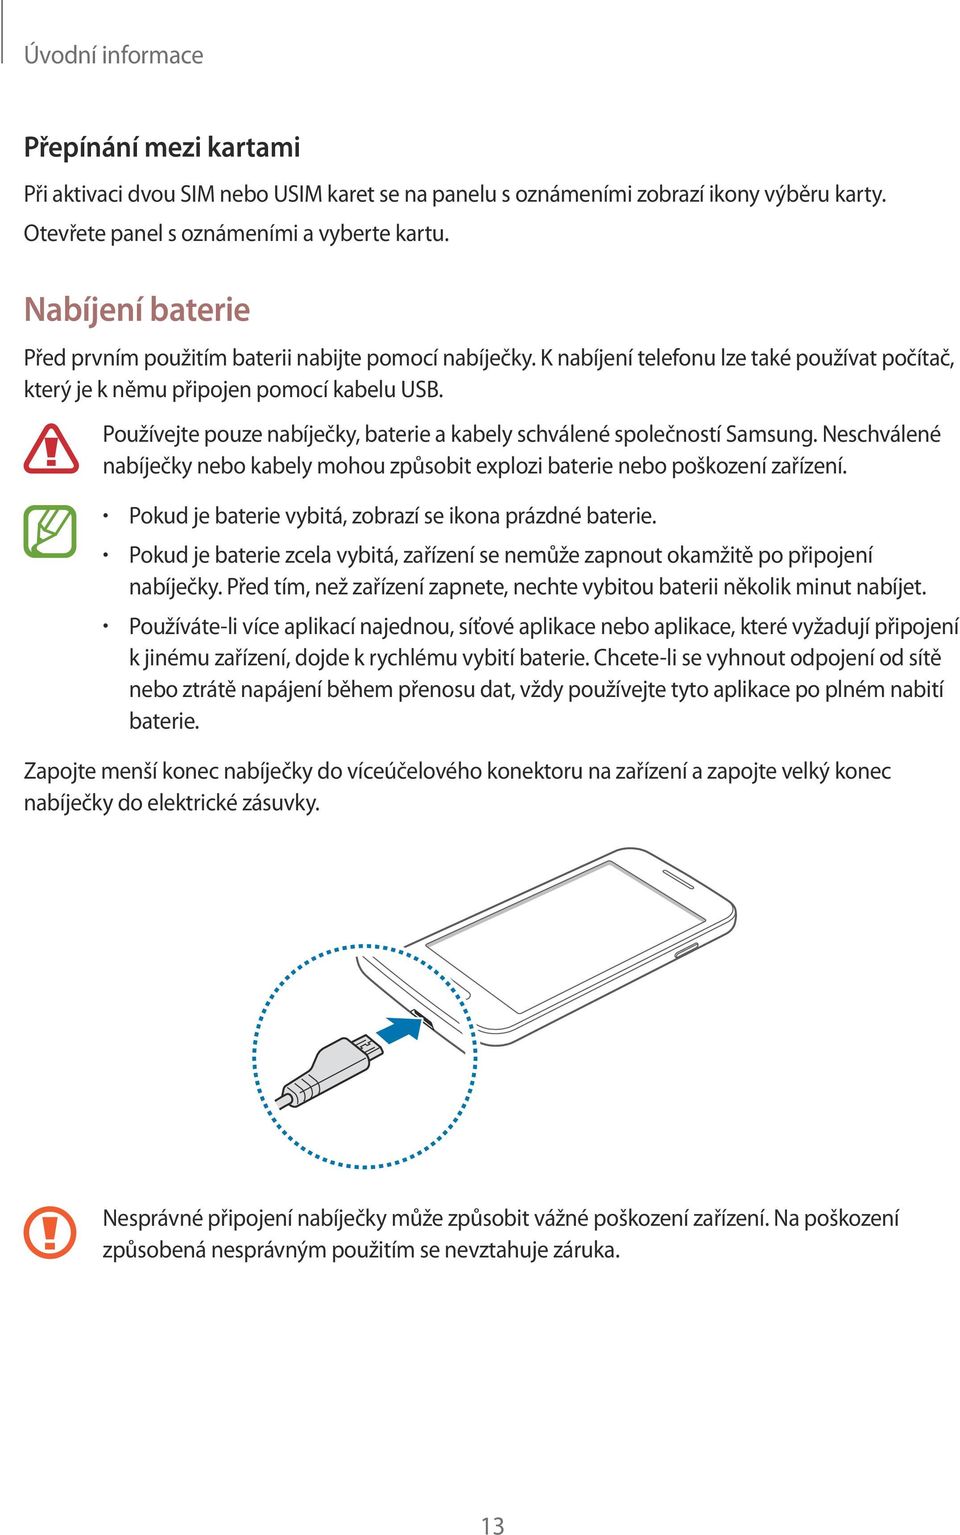 Používejte pouze nabíječky, baterie a kabely schválené společností Samsung. Neschválené nabíječky nebo kabely mohou způsobit explozi baterie nebo poškození zařízení.